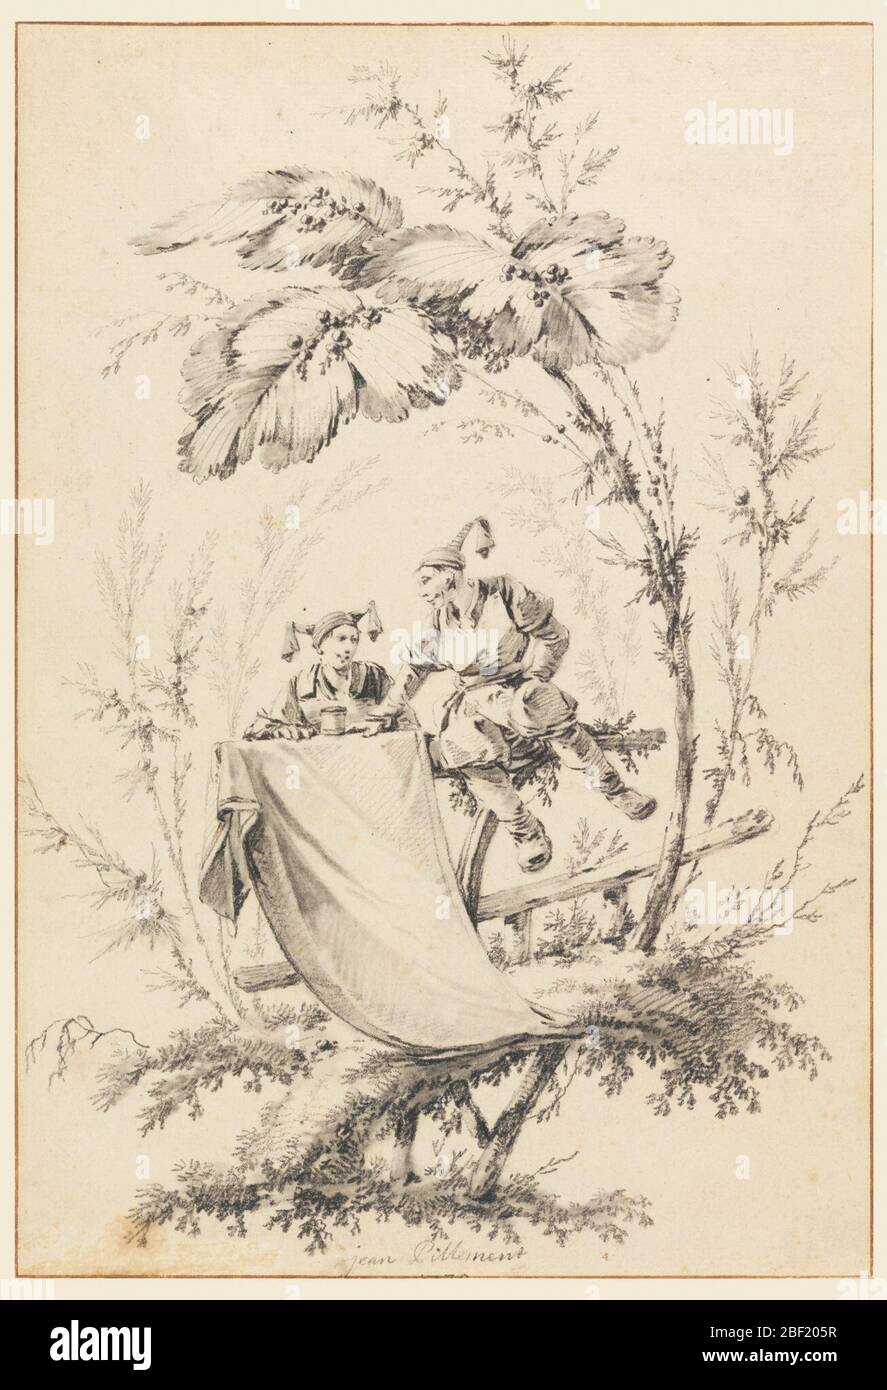 Disegno per la pagina del titolo Cahier des Parasols Chinois. Sotto alberi fantasiosi, un uomo e una donna cinesi sono seduti su una sezione di recinto rustico, sul quale è appeso un panno destinato al titolo. Foto Stock